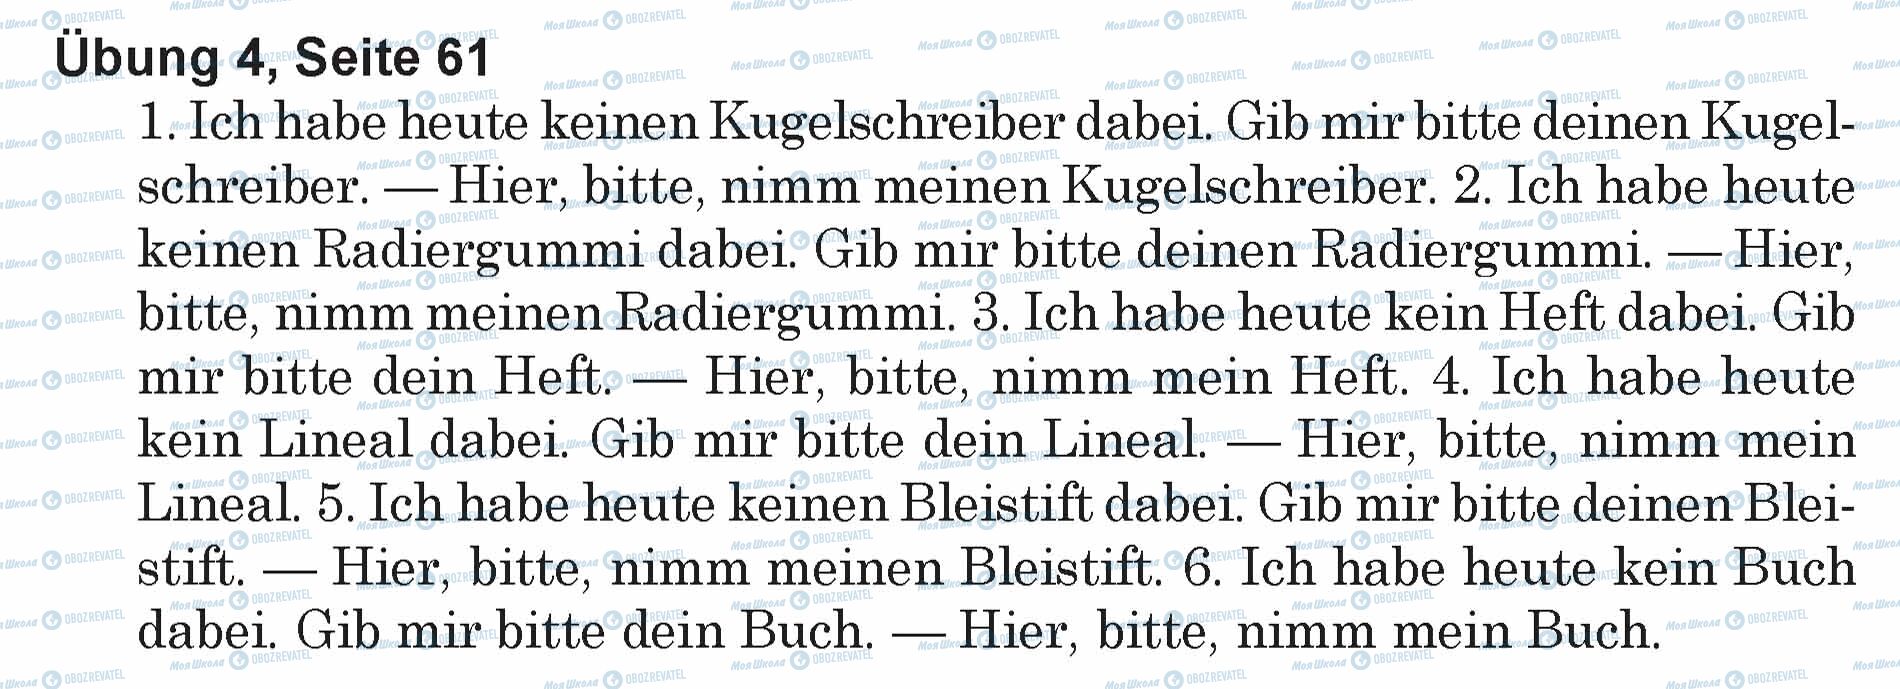 ГДЗ Німецька мова 5 клас сторінка Ubung 4, Seite 61